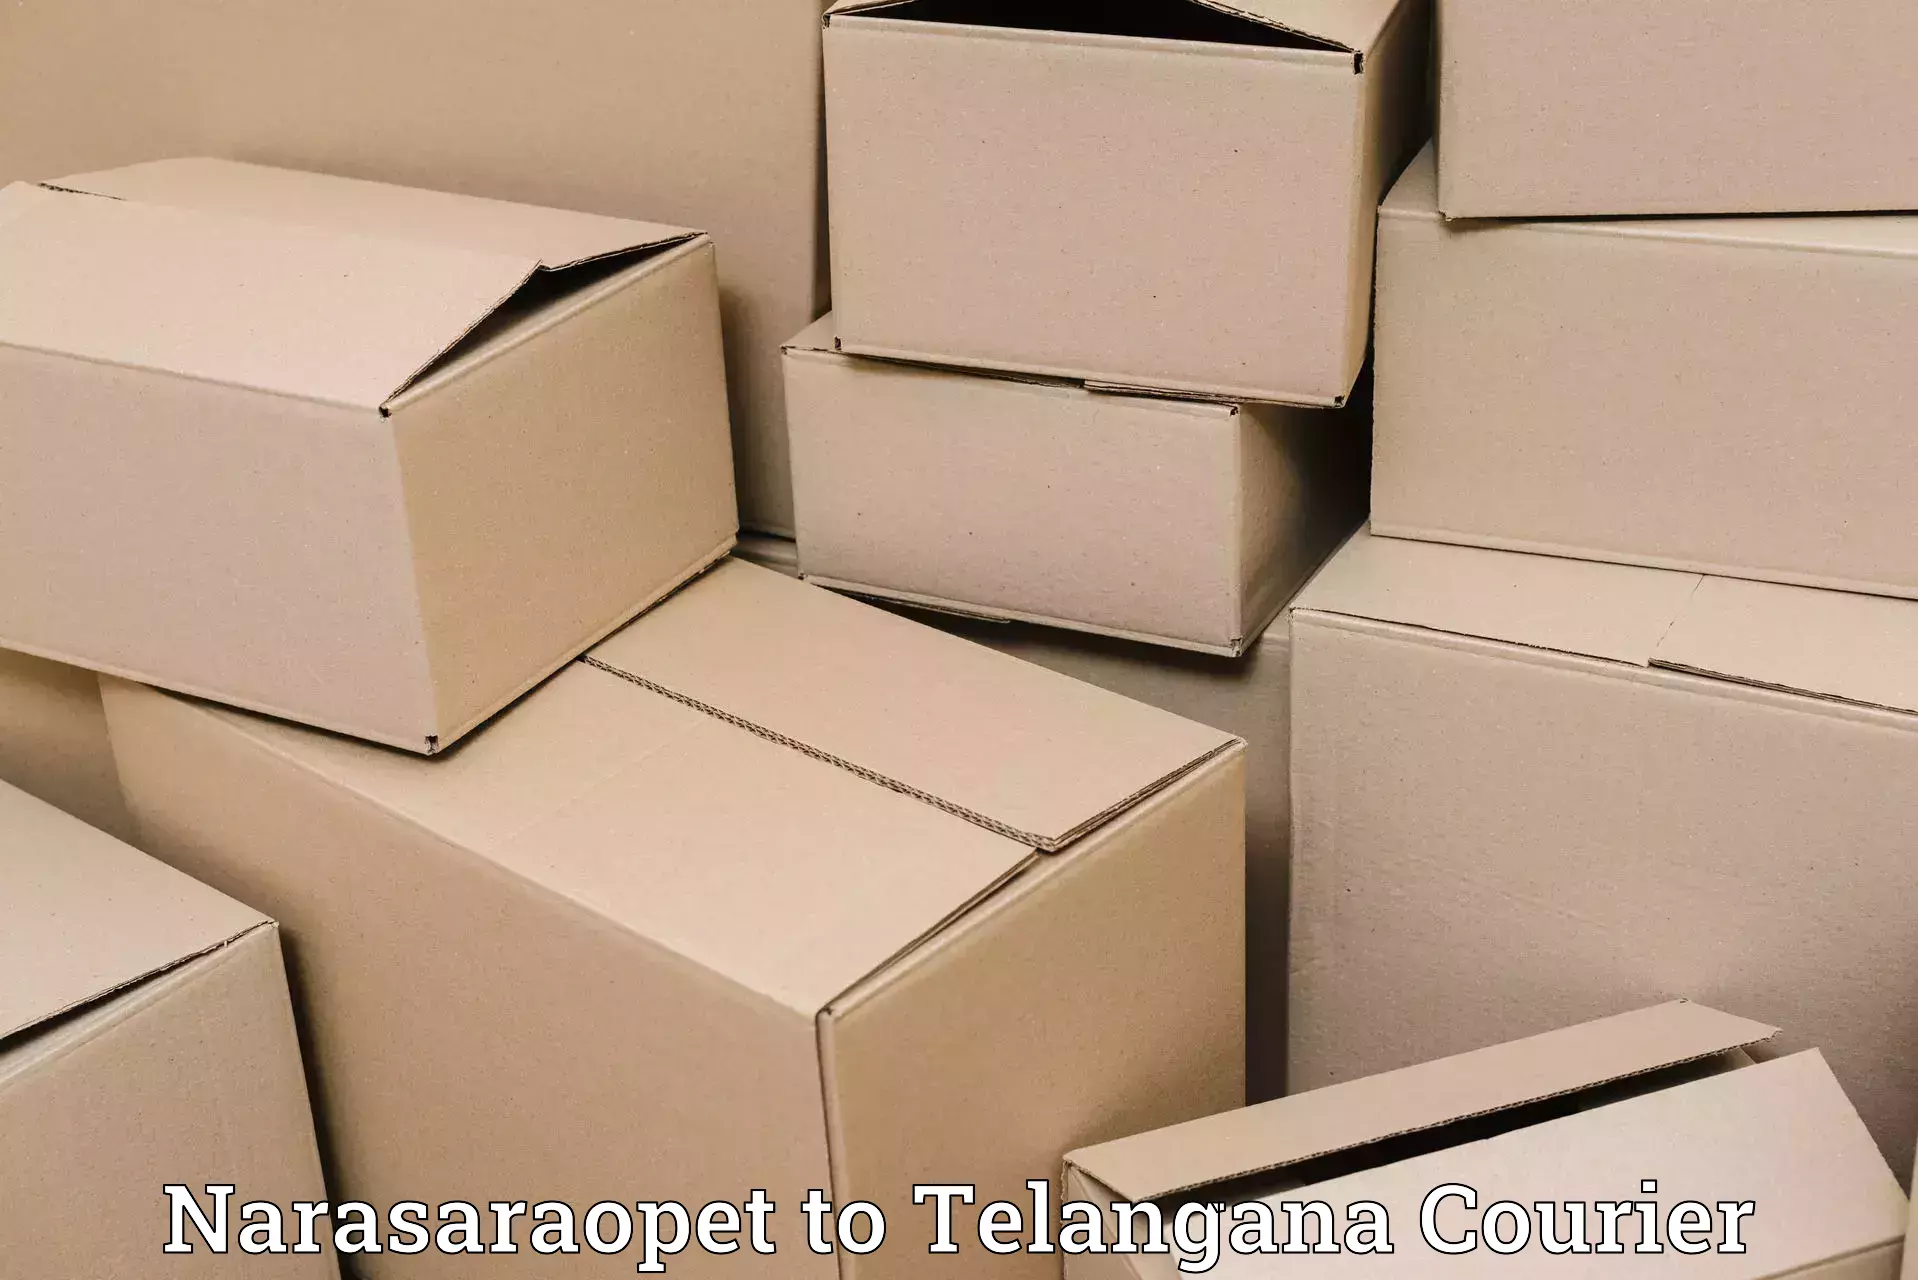 Logistics management Narasaraopet to Telangana